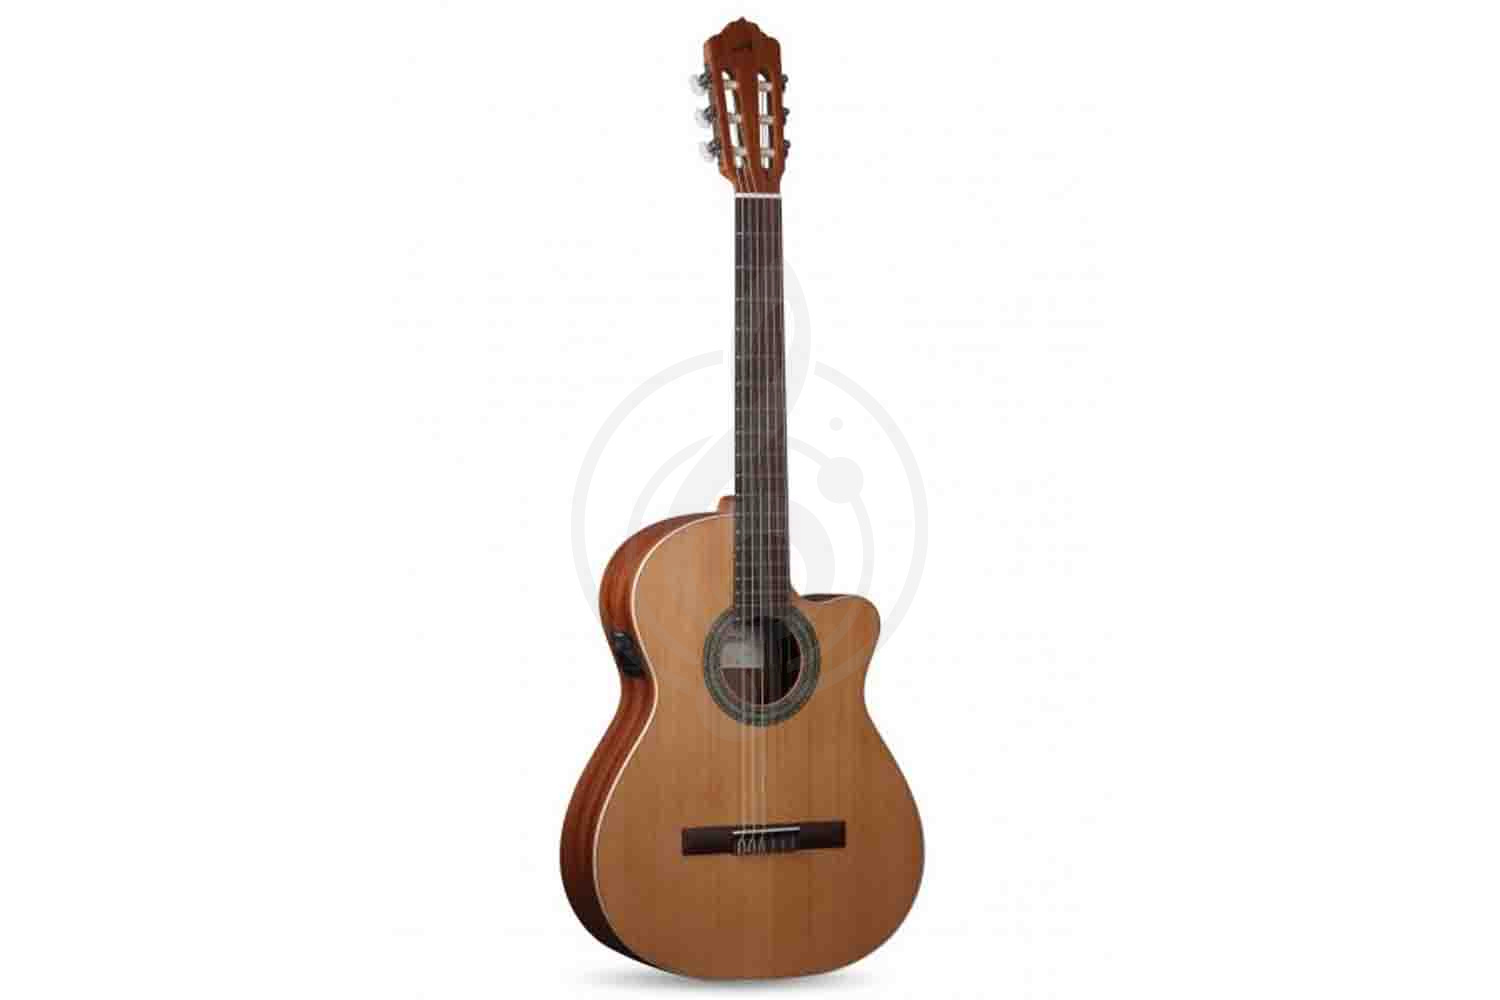 Электроакустическая гитара Электроакустические гитары Almansa ALMANSA 400 nature CTW (EZ) гитара классическая c вырезом , эквалайзер, шесть струн, нейлон, массив  400 nature CTW (EZ) - фото 1